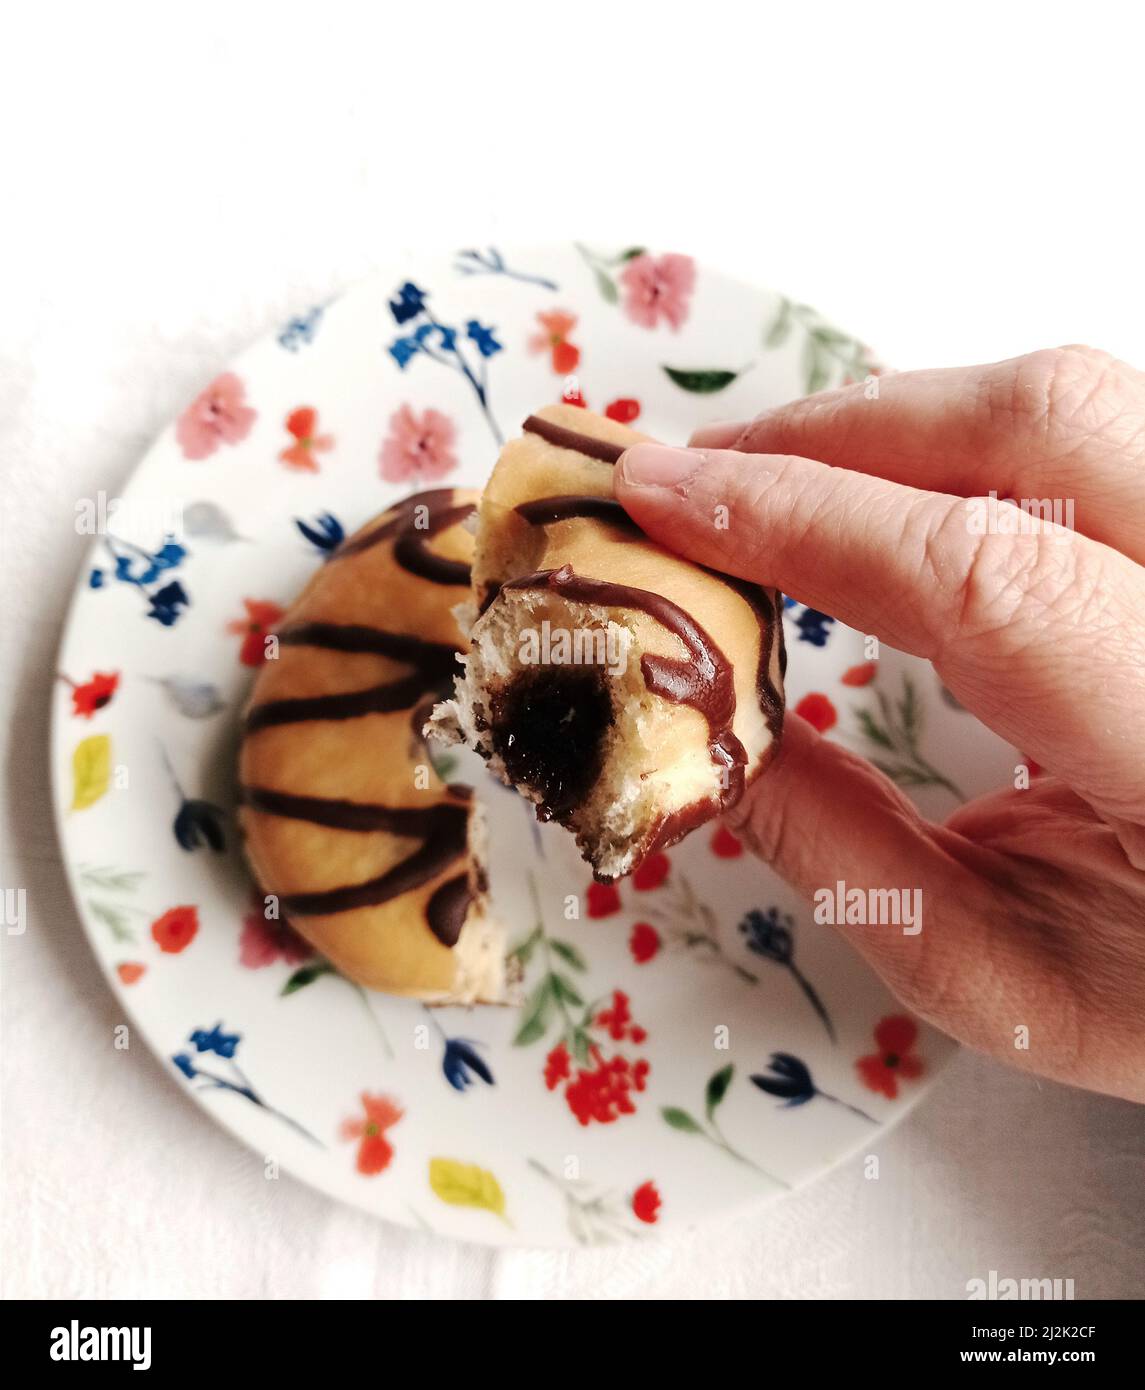 Mano della donna che tiene una ciambella ripiena di cioccolato mangiata a metà Foto Stock